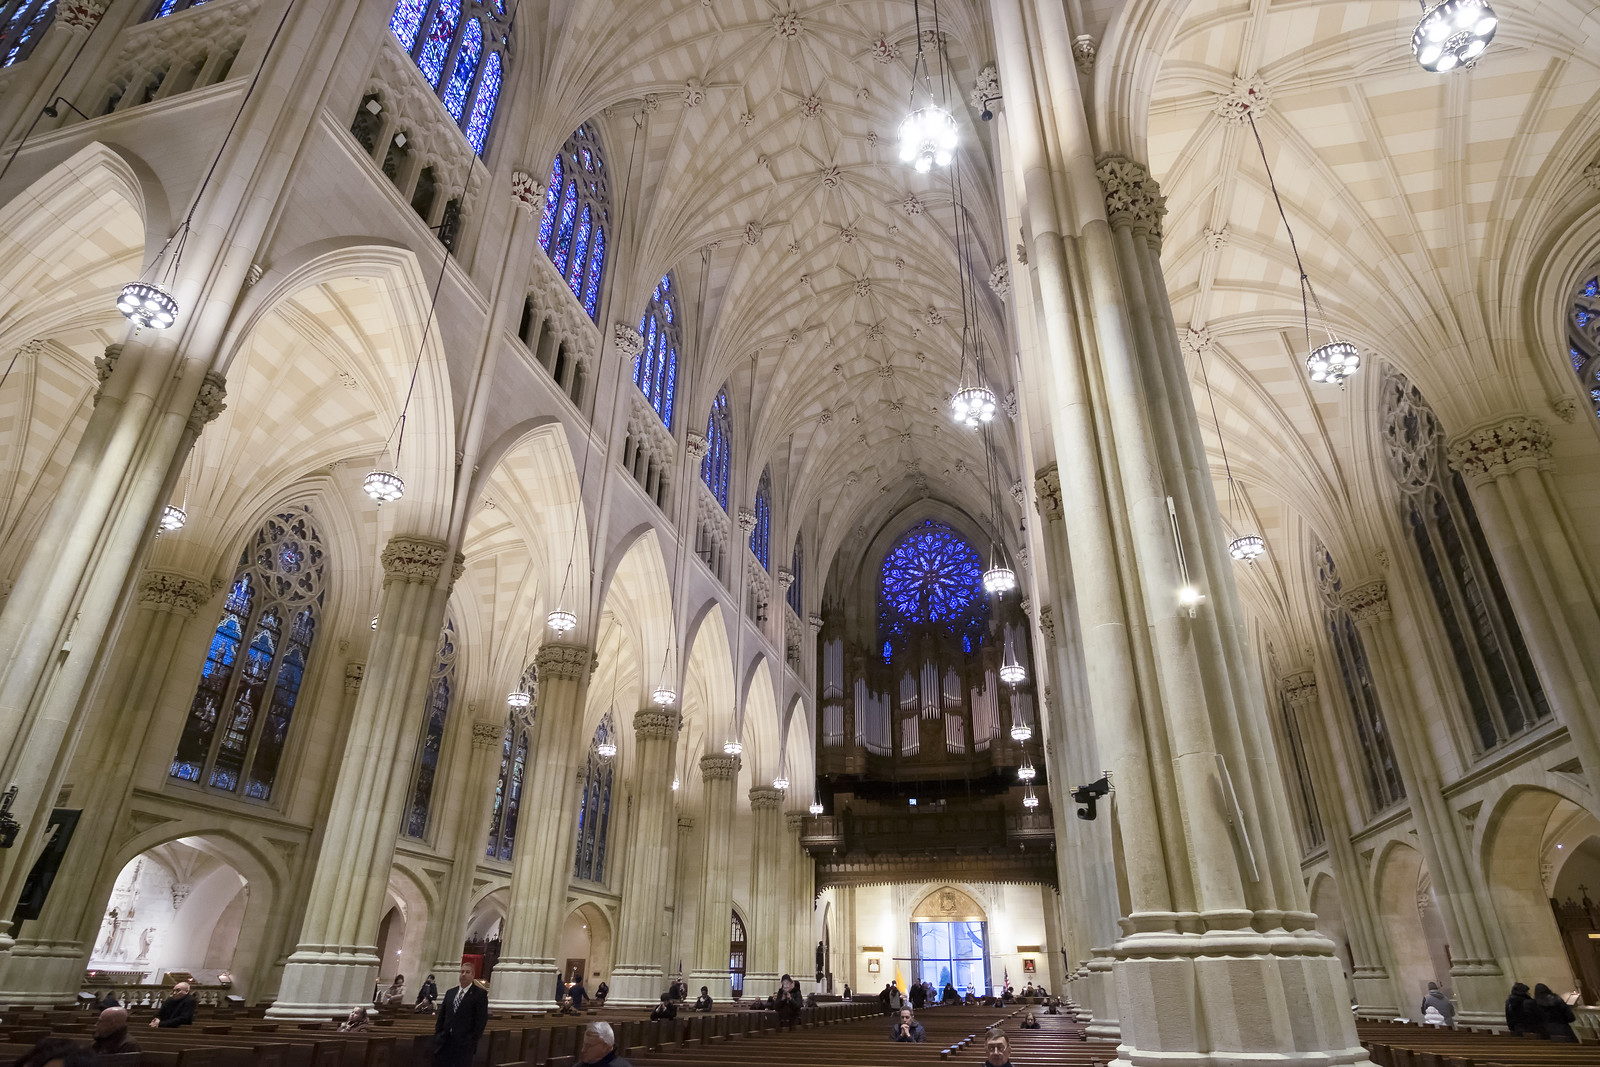 St. Patrick's Cathedral - Main nave and organ